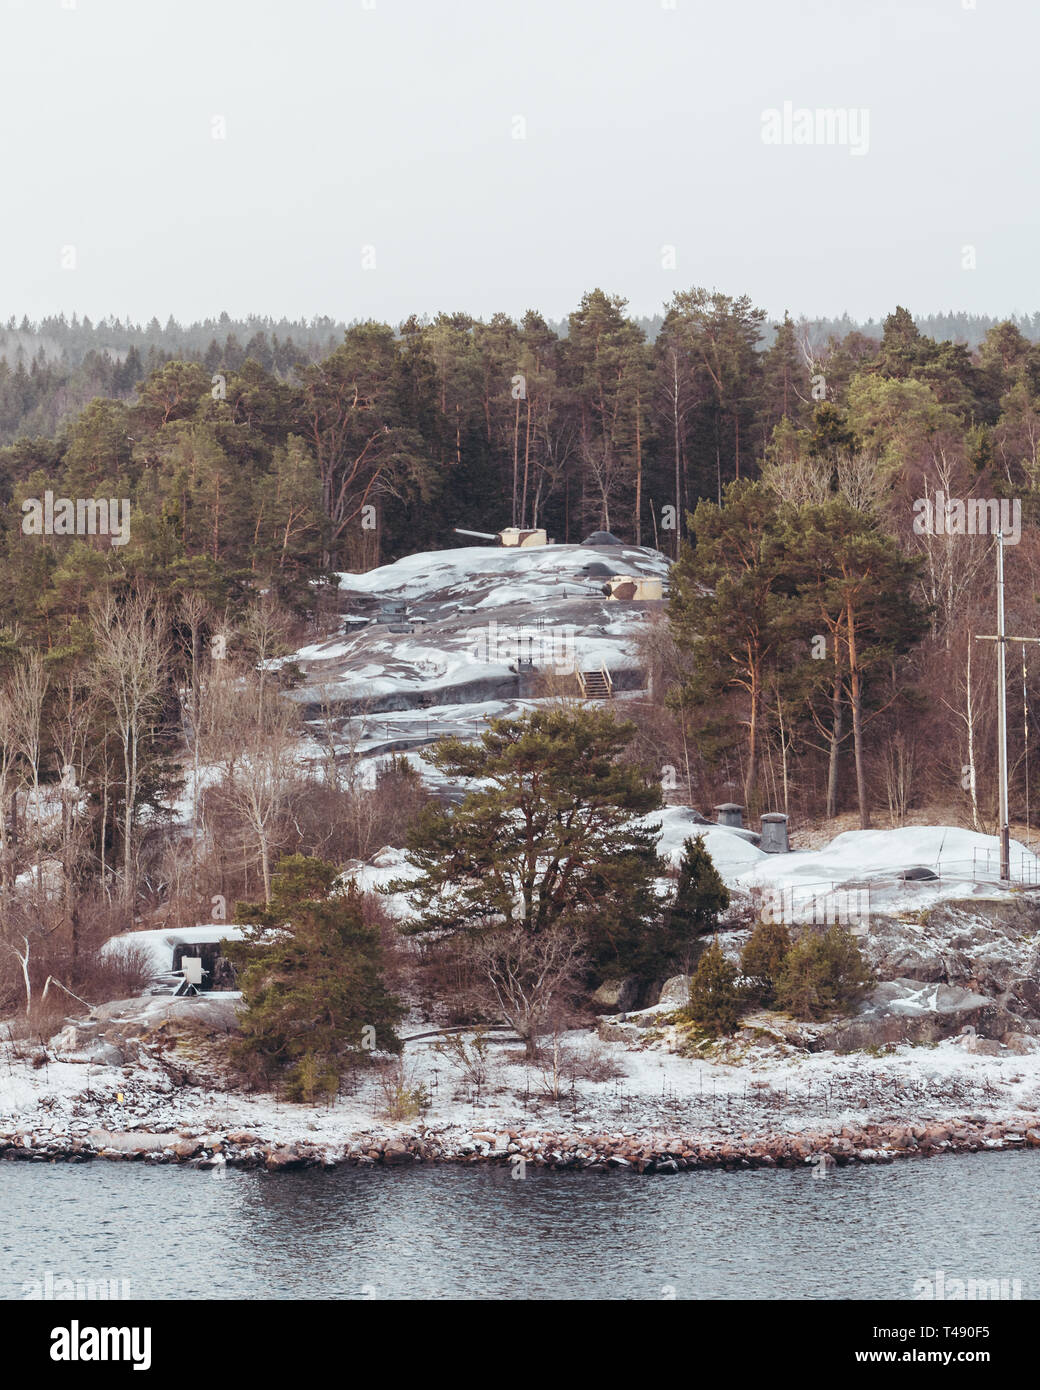 Positions de défense derrière des arbres dans l'une des îles de l'archipel de Stockholm sur un jour de neige, la Suède Banque D'Images